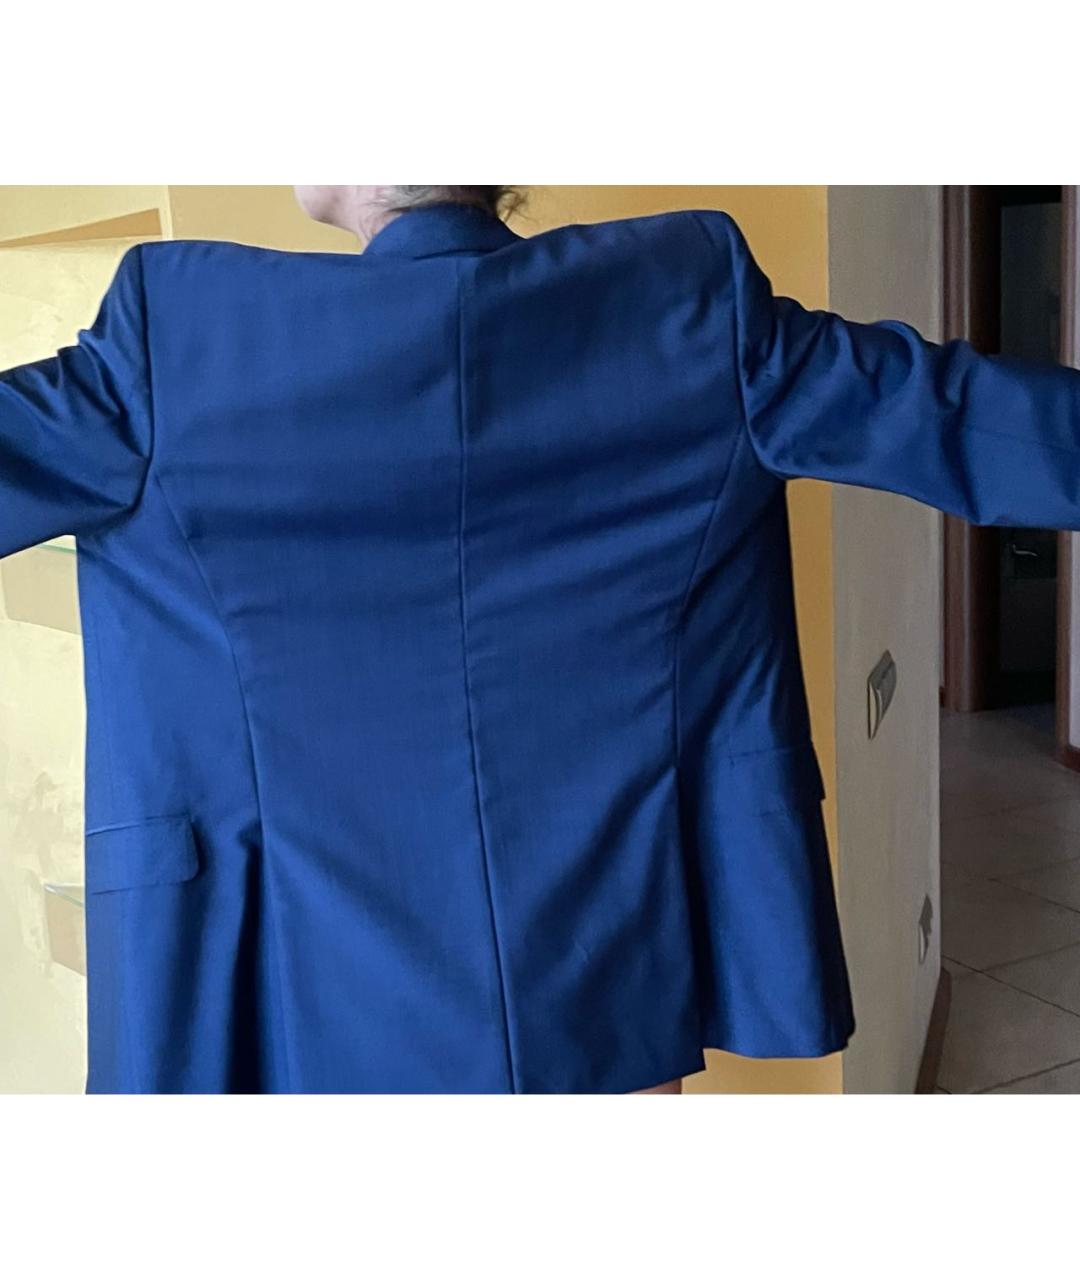 EDUARD DRESSLER Синий шерстяной жакет/пиджак, фото 7